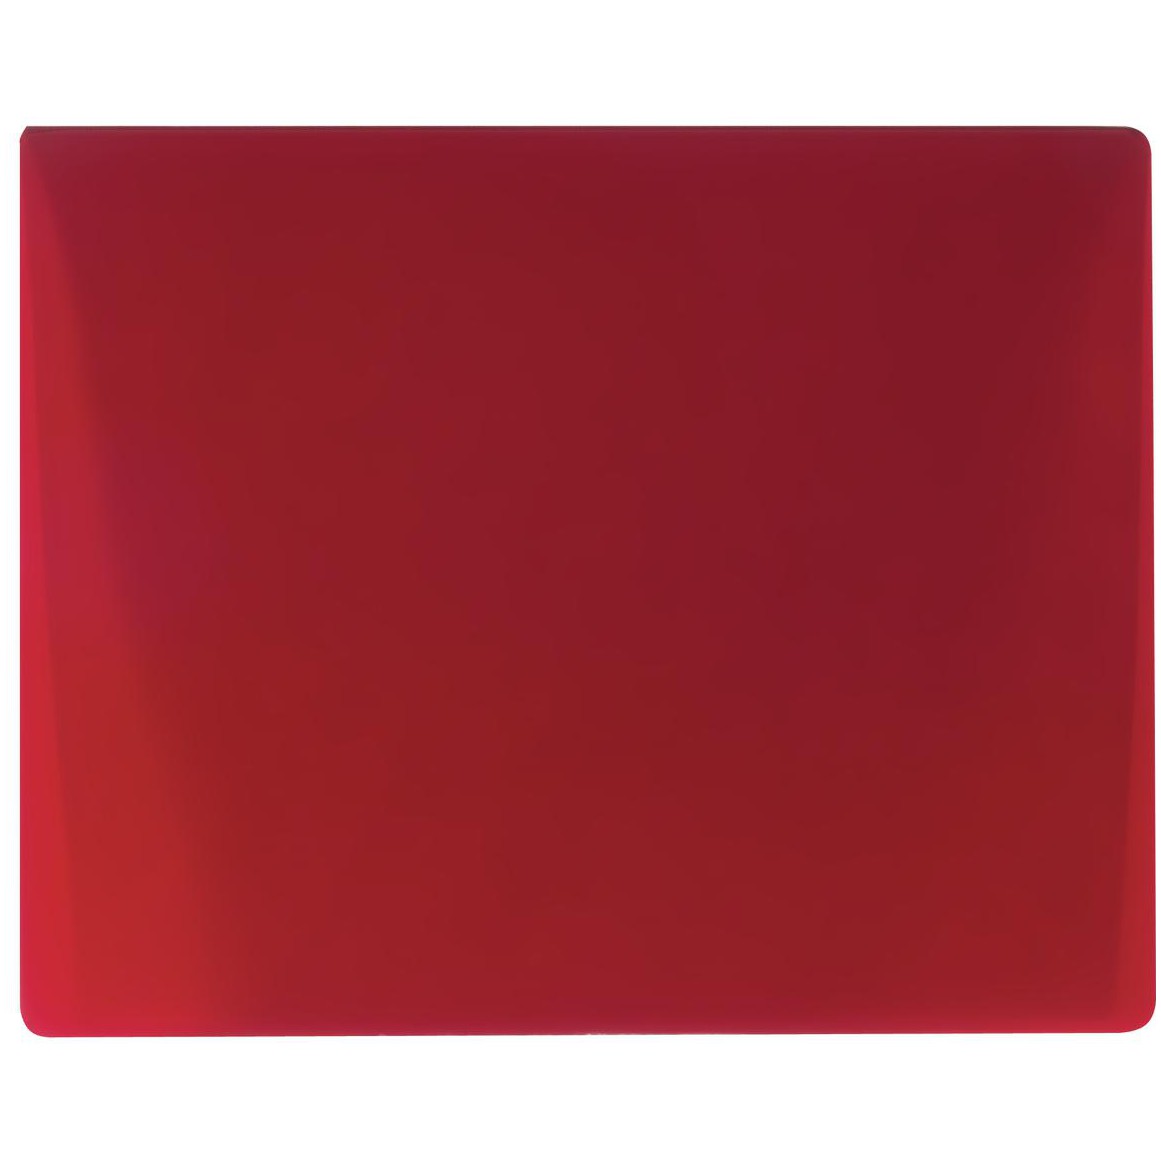 Filtr floodlight červený, 165x132mm